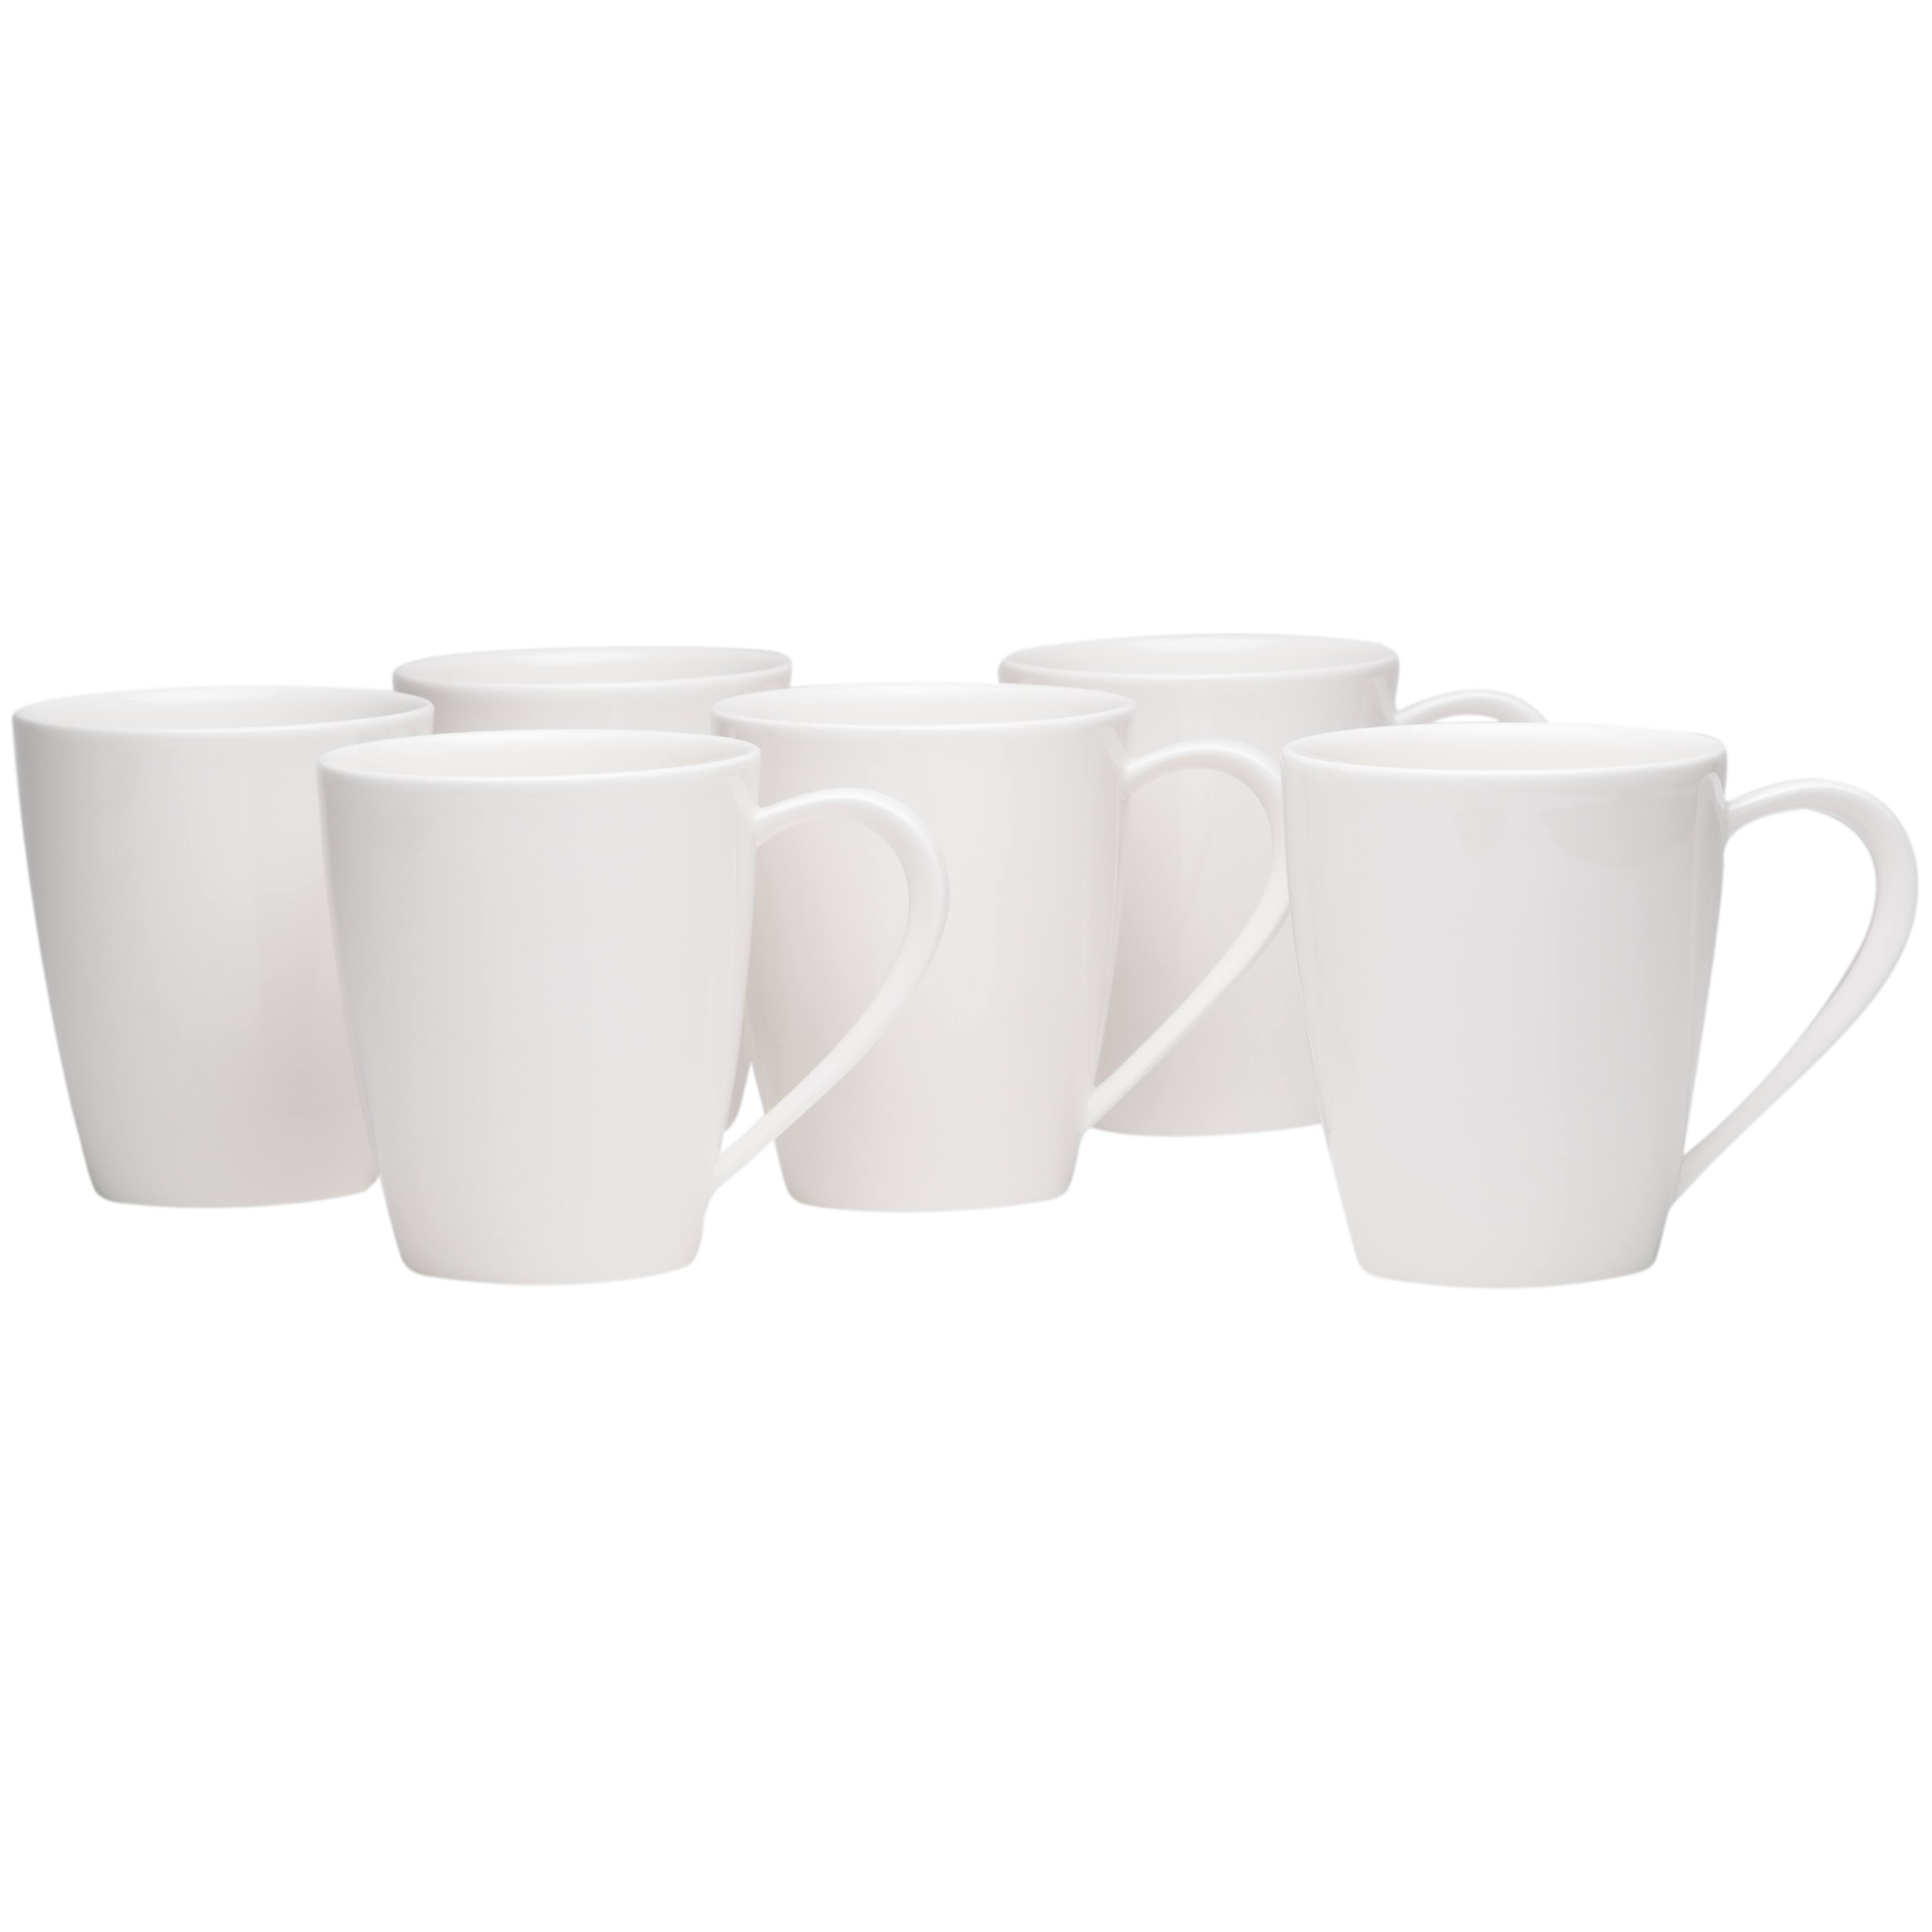 Hospitality White Mug Set of 6